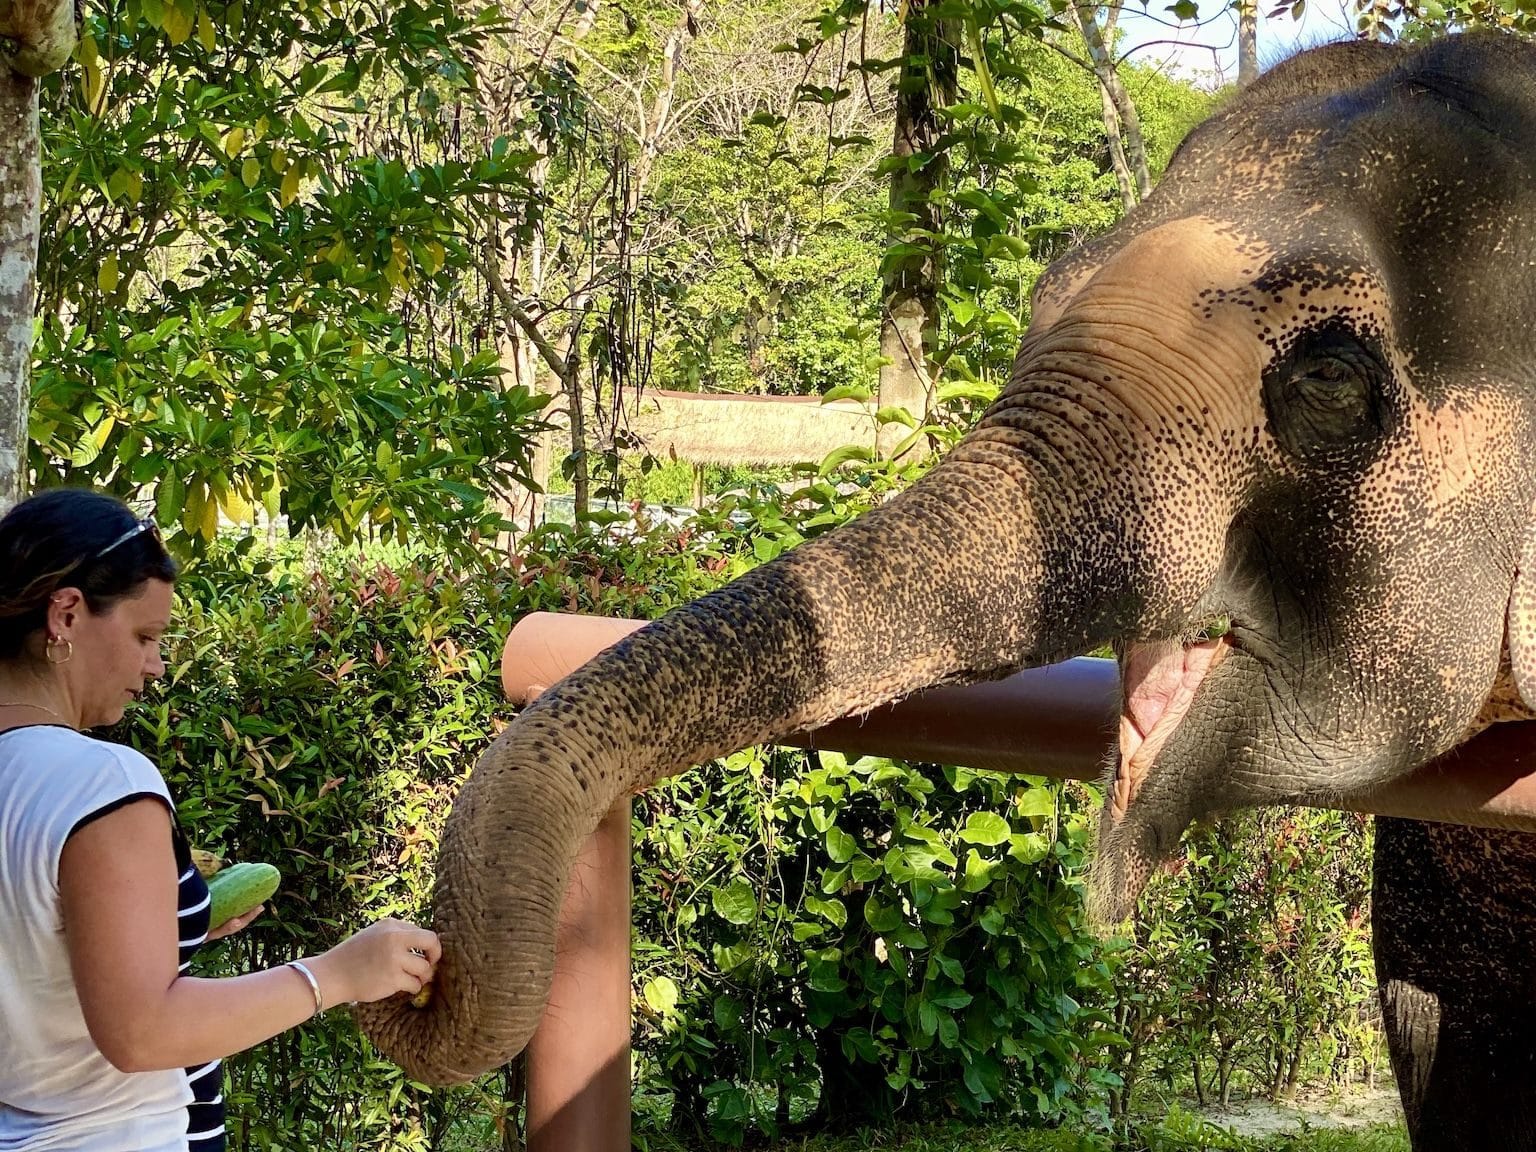 À la fin de la visite, les visiteurs peuvent nourrir les éléphants. Photo: Sascha Tegtmeyer